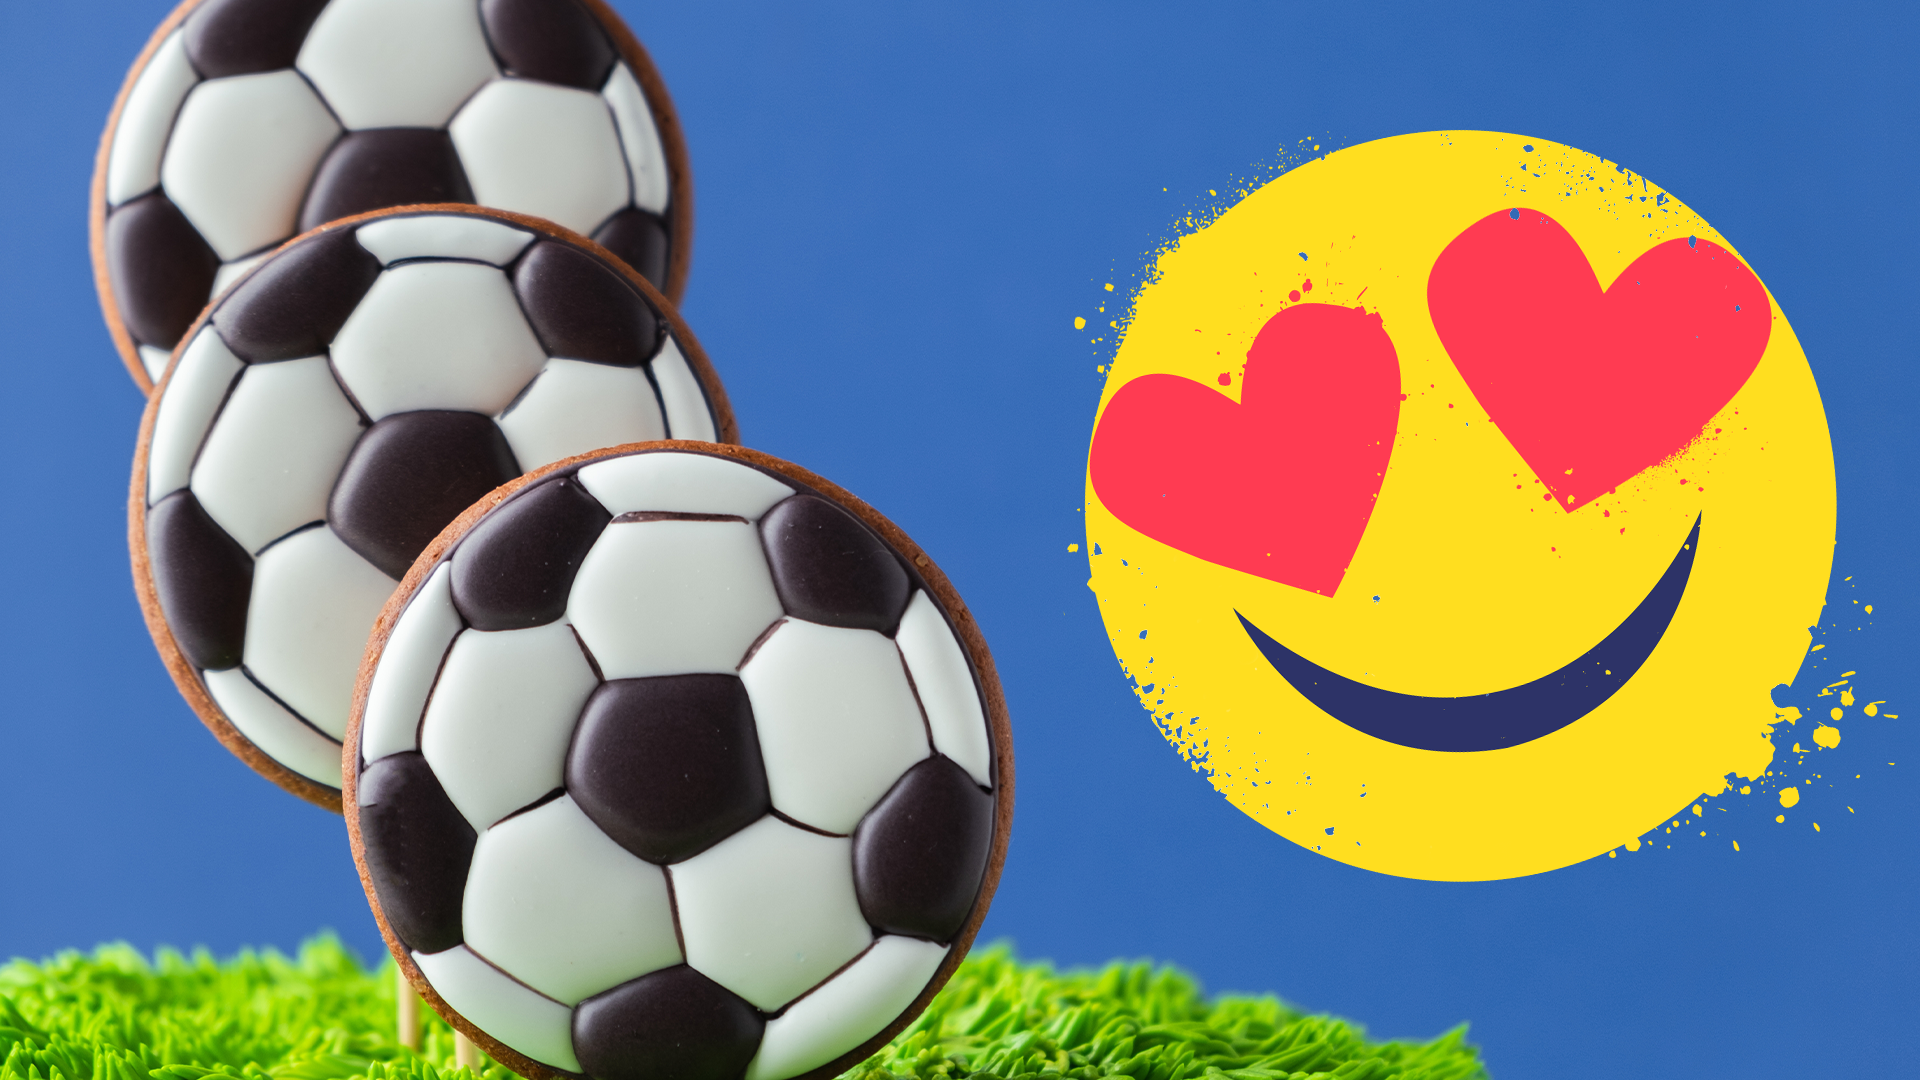 Football cookies with heart-eyes emoji